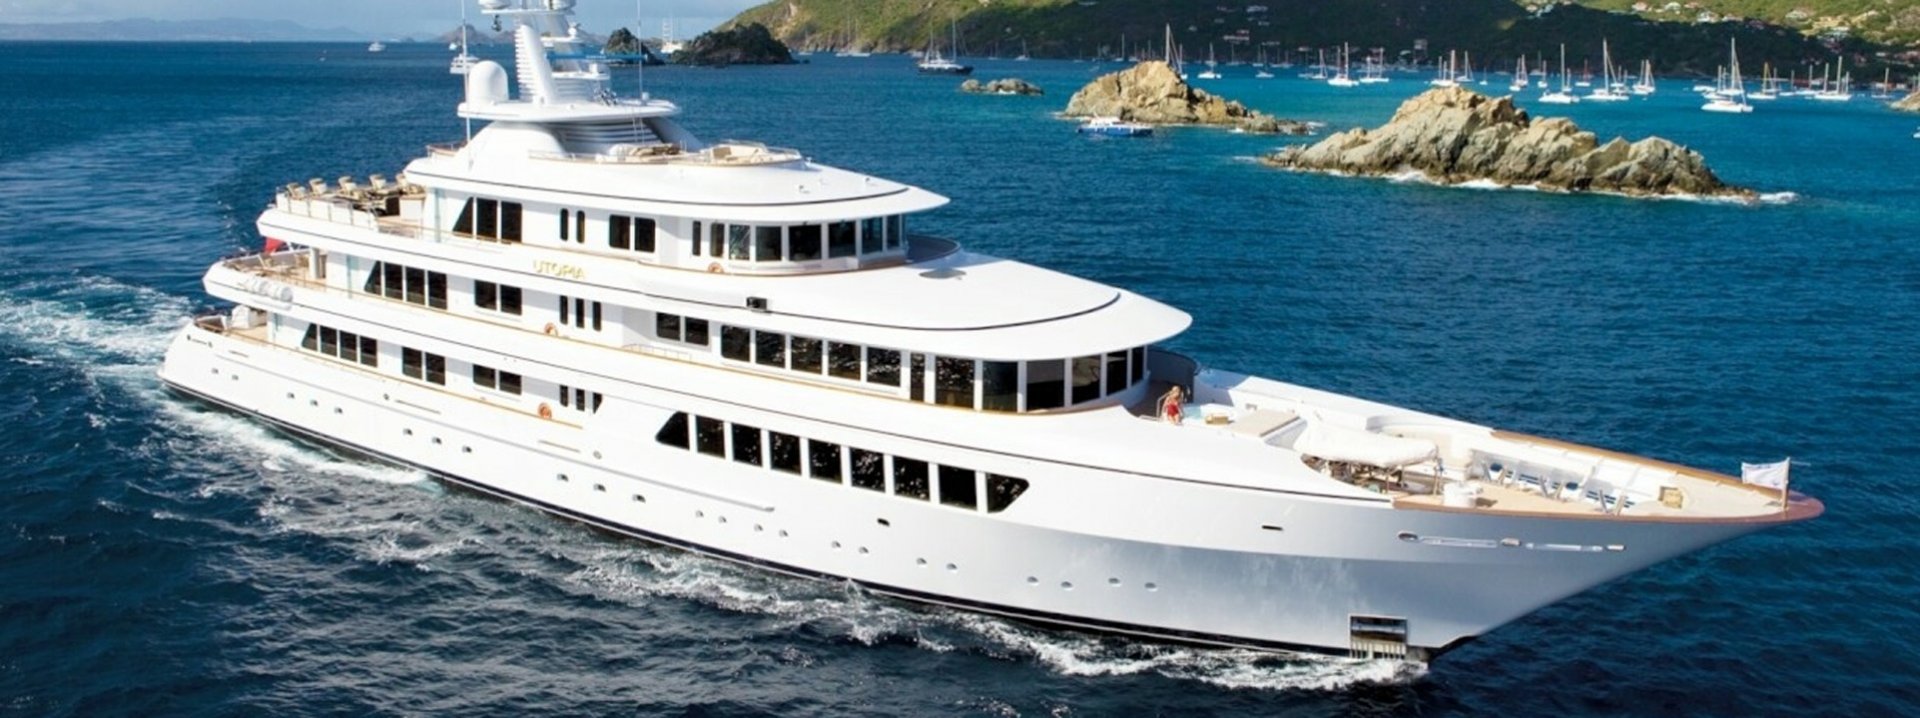 Luxury Yacht Utopia IV